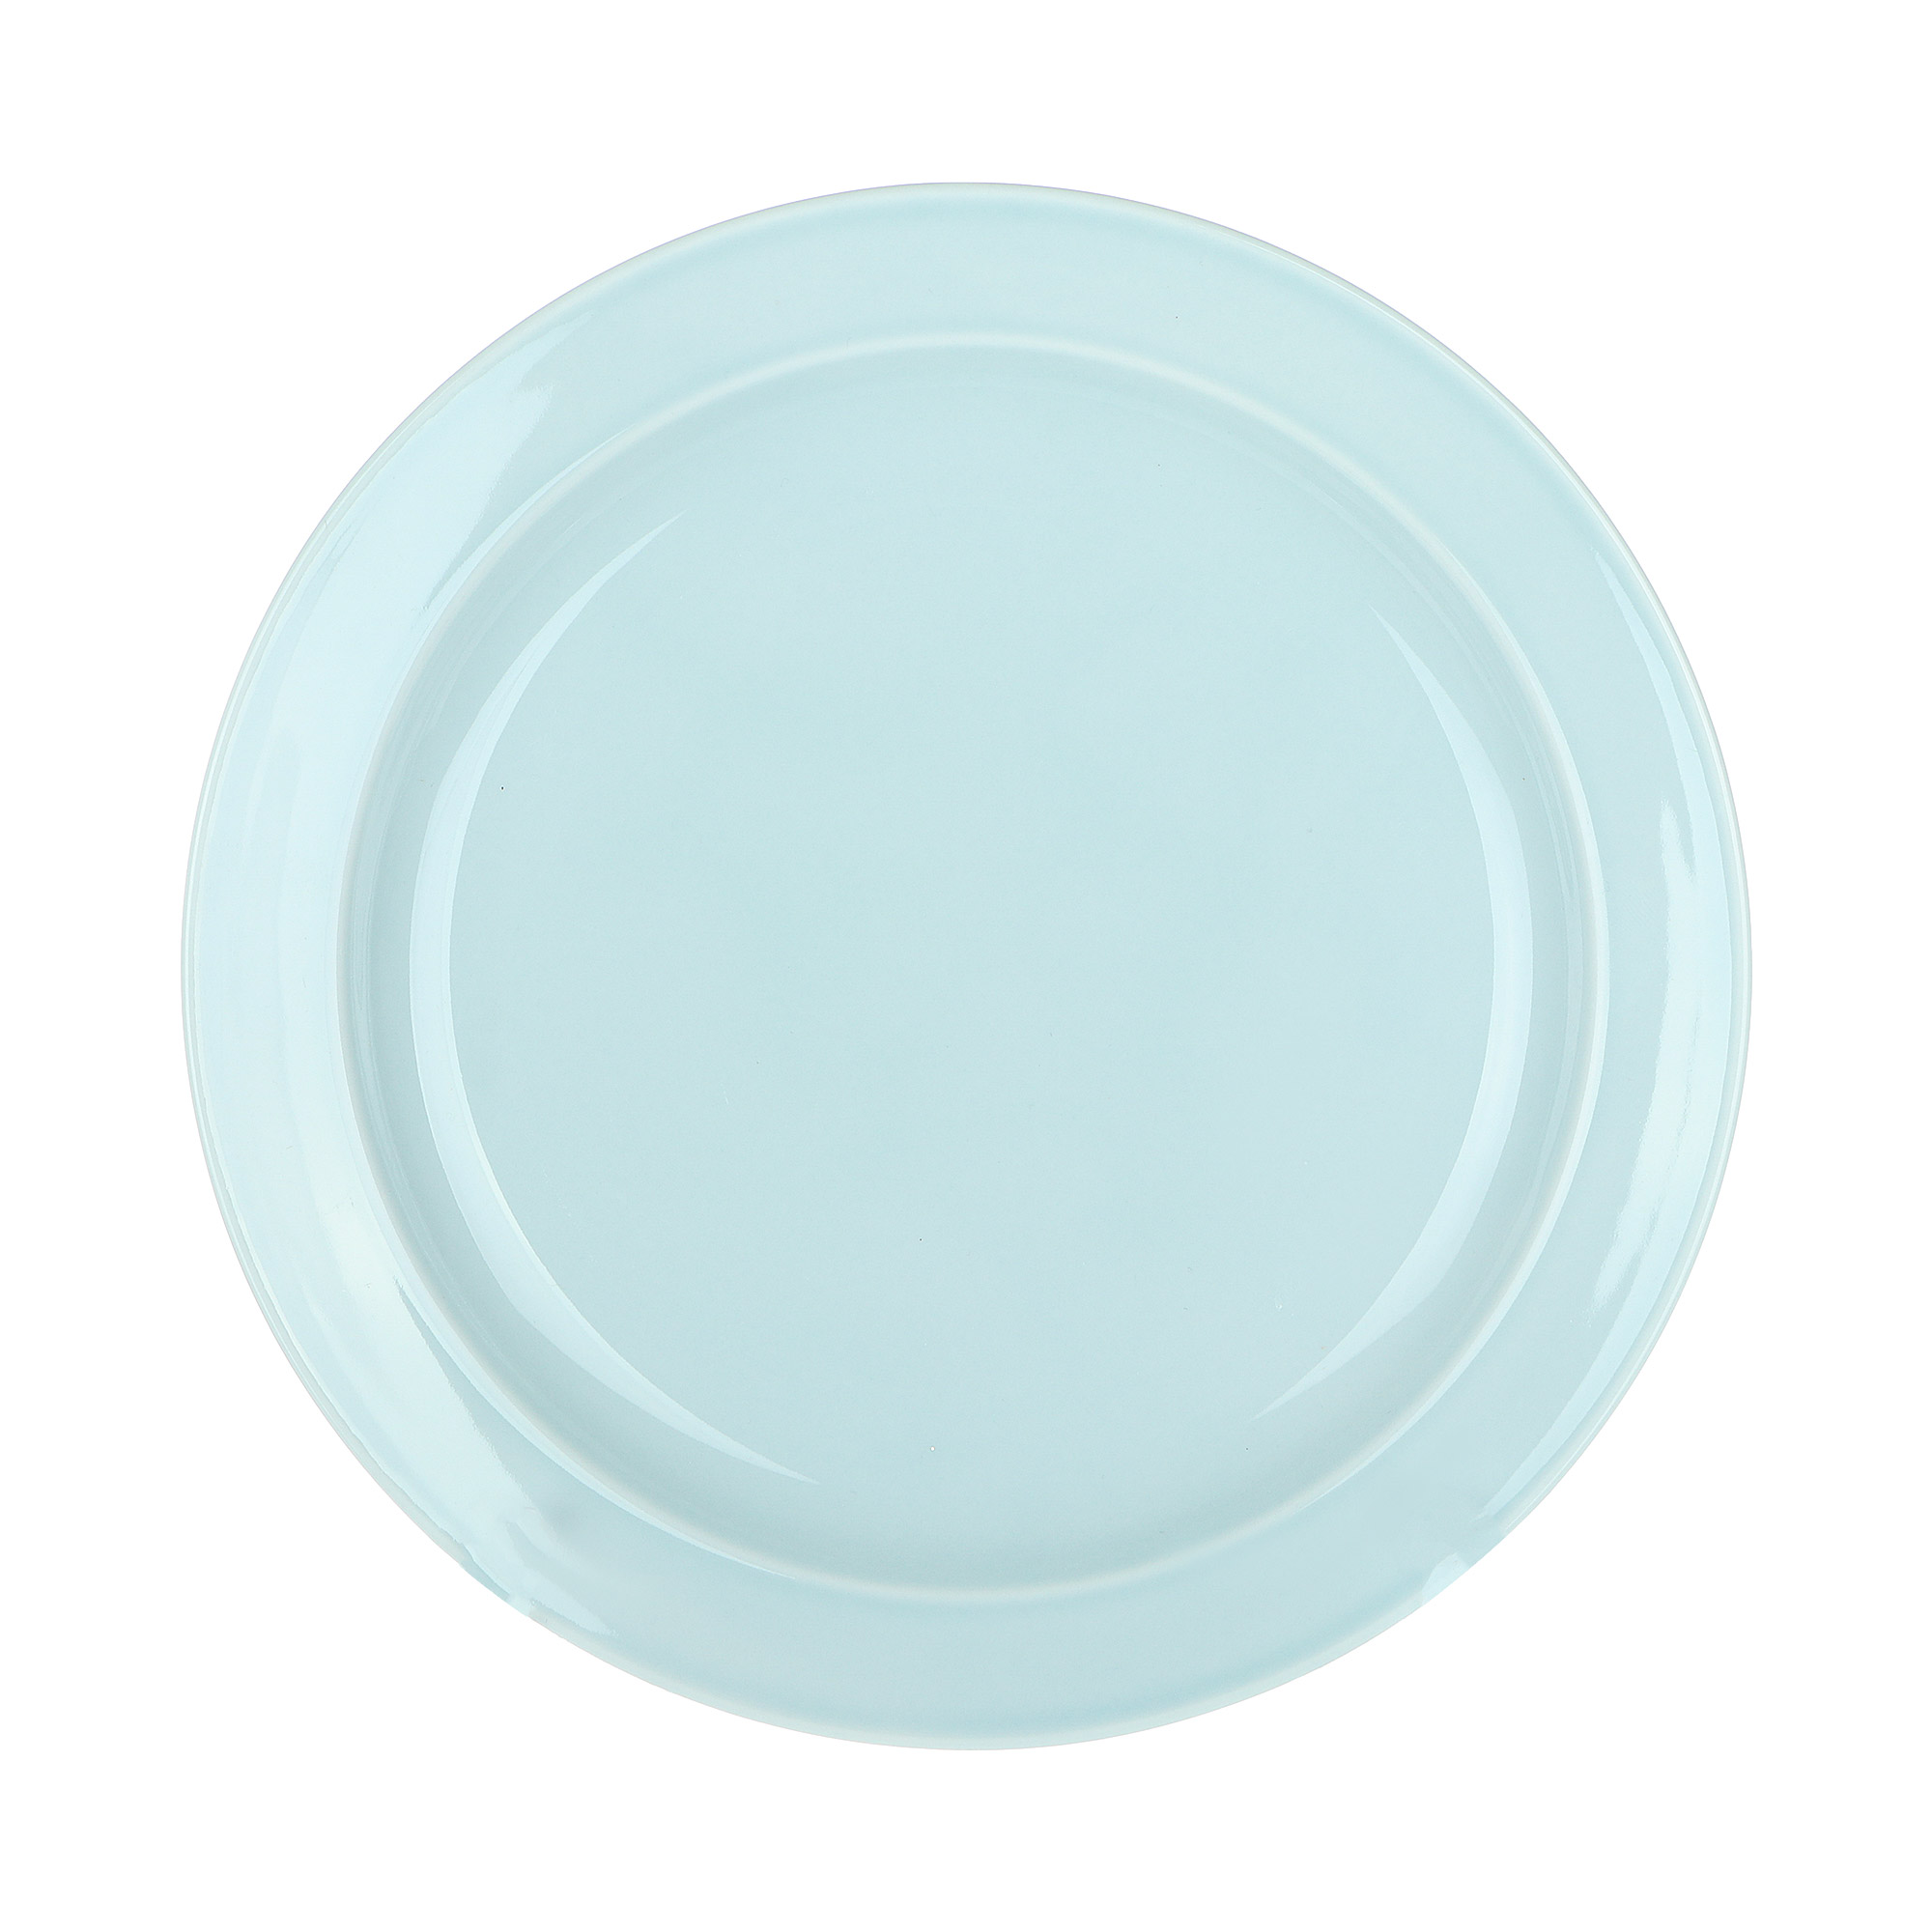 Тарелка мелкая Башкирский фарфор Принц 24 см светло-голубой тарелка мелкая башкирский фарфор принц 24 см темно серый